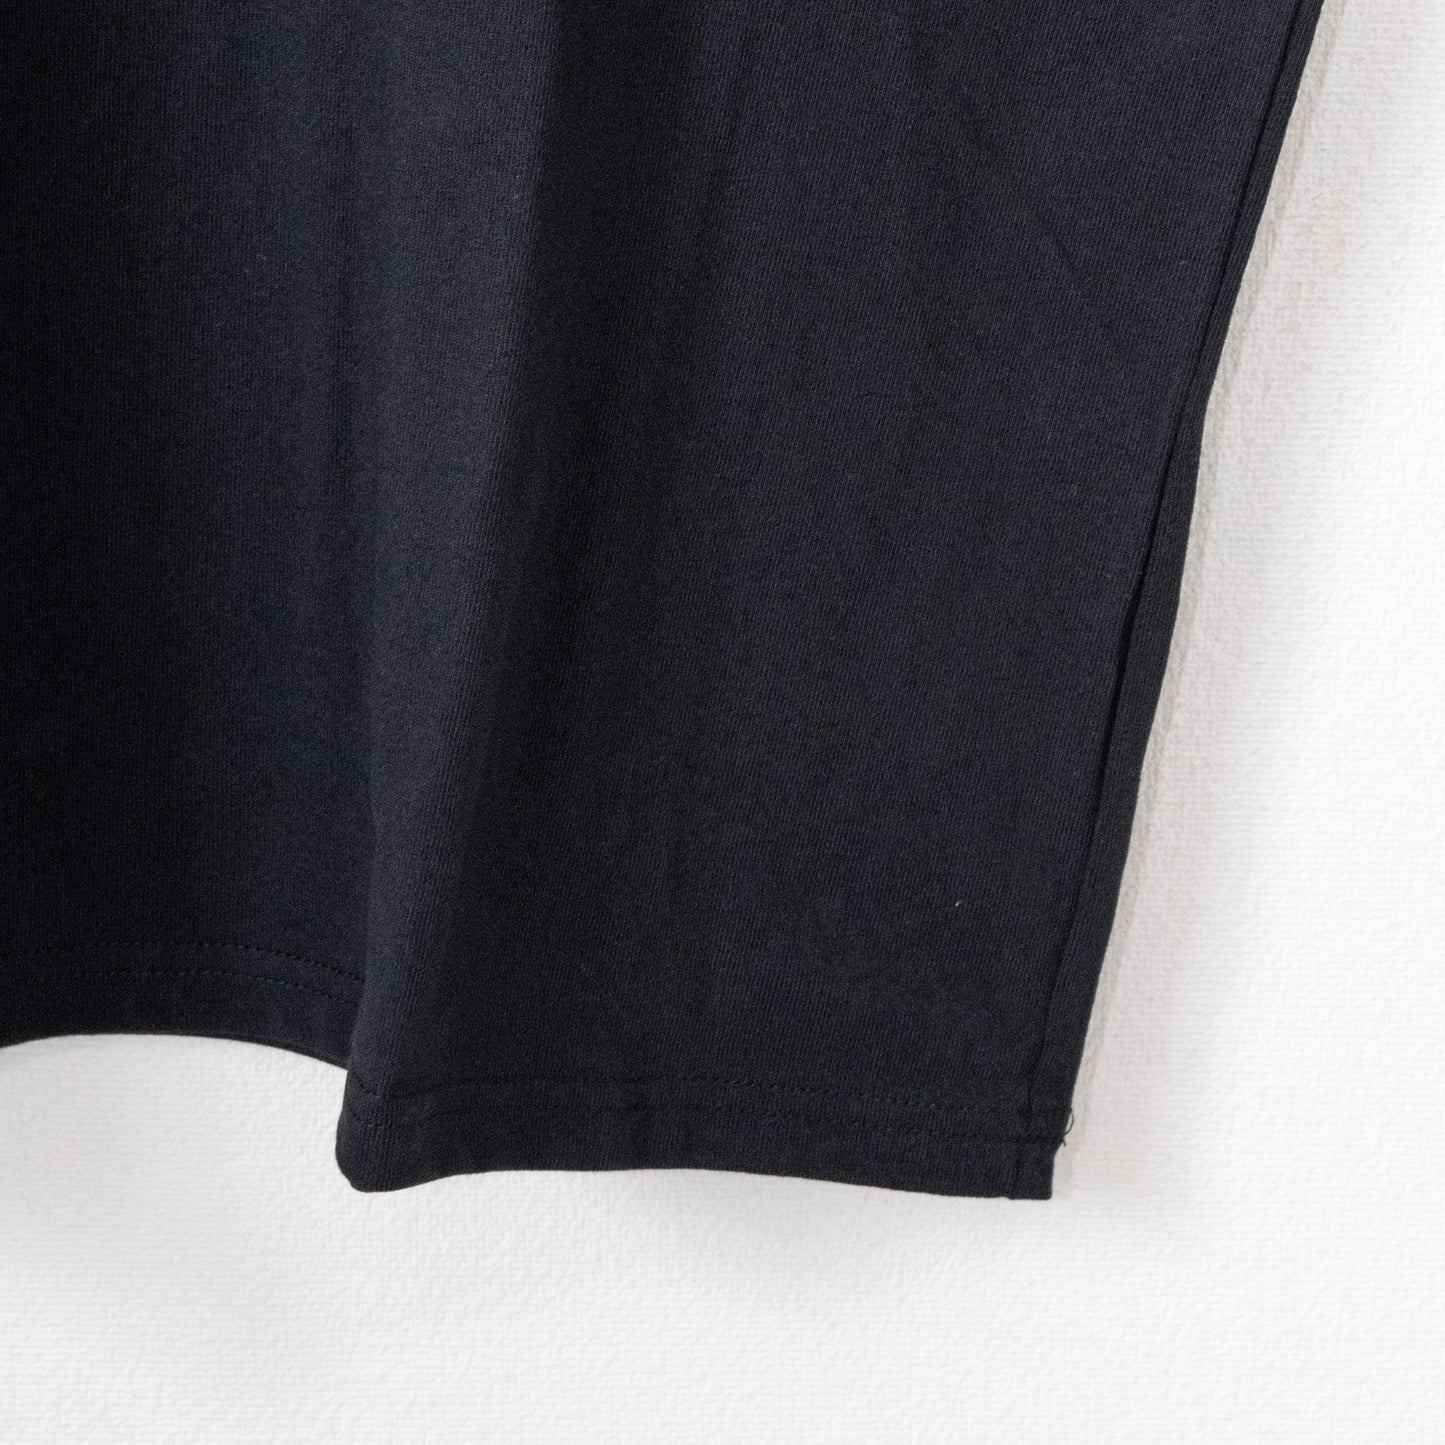 パックマン 公式 レトロキャラ プリント 半袖Tシャツ BLACK